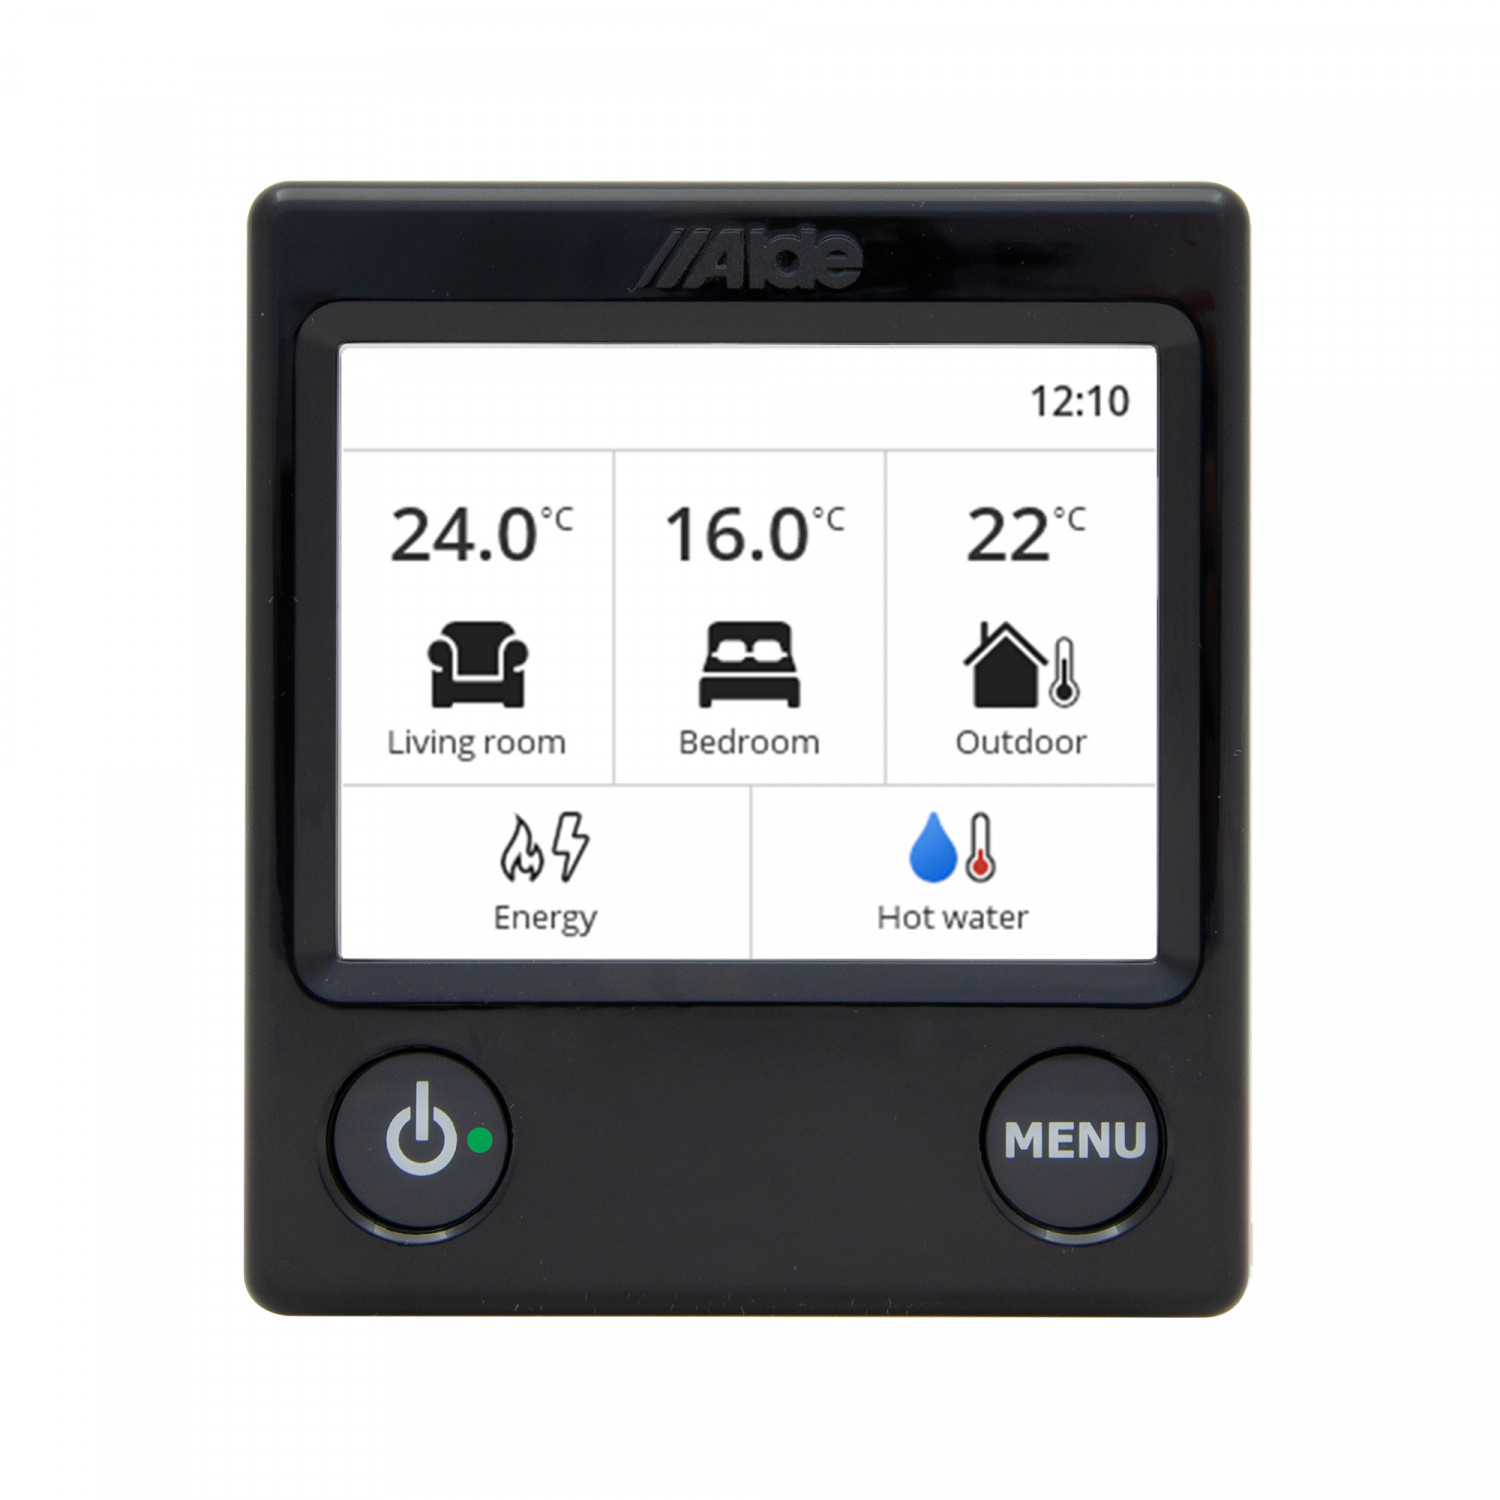 ALDE Schaltpaneel 3030 Farb-Touchscreen, schwarz